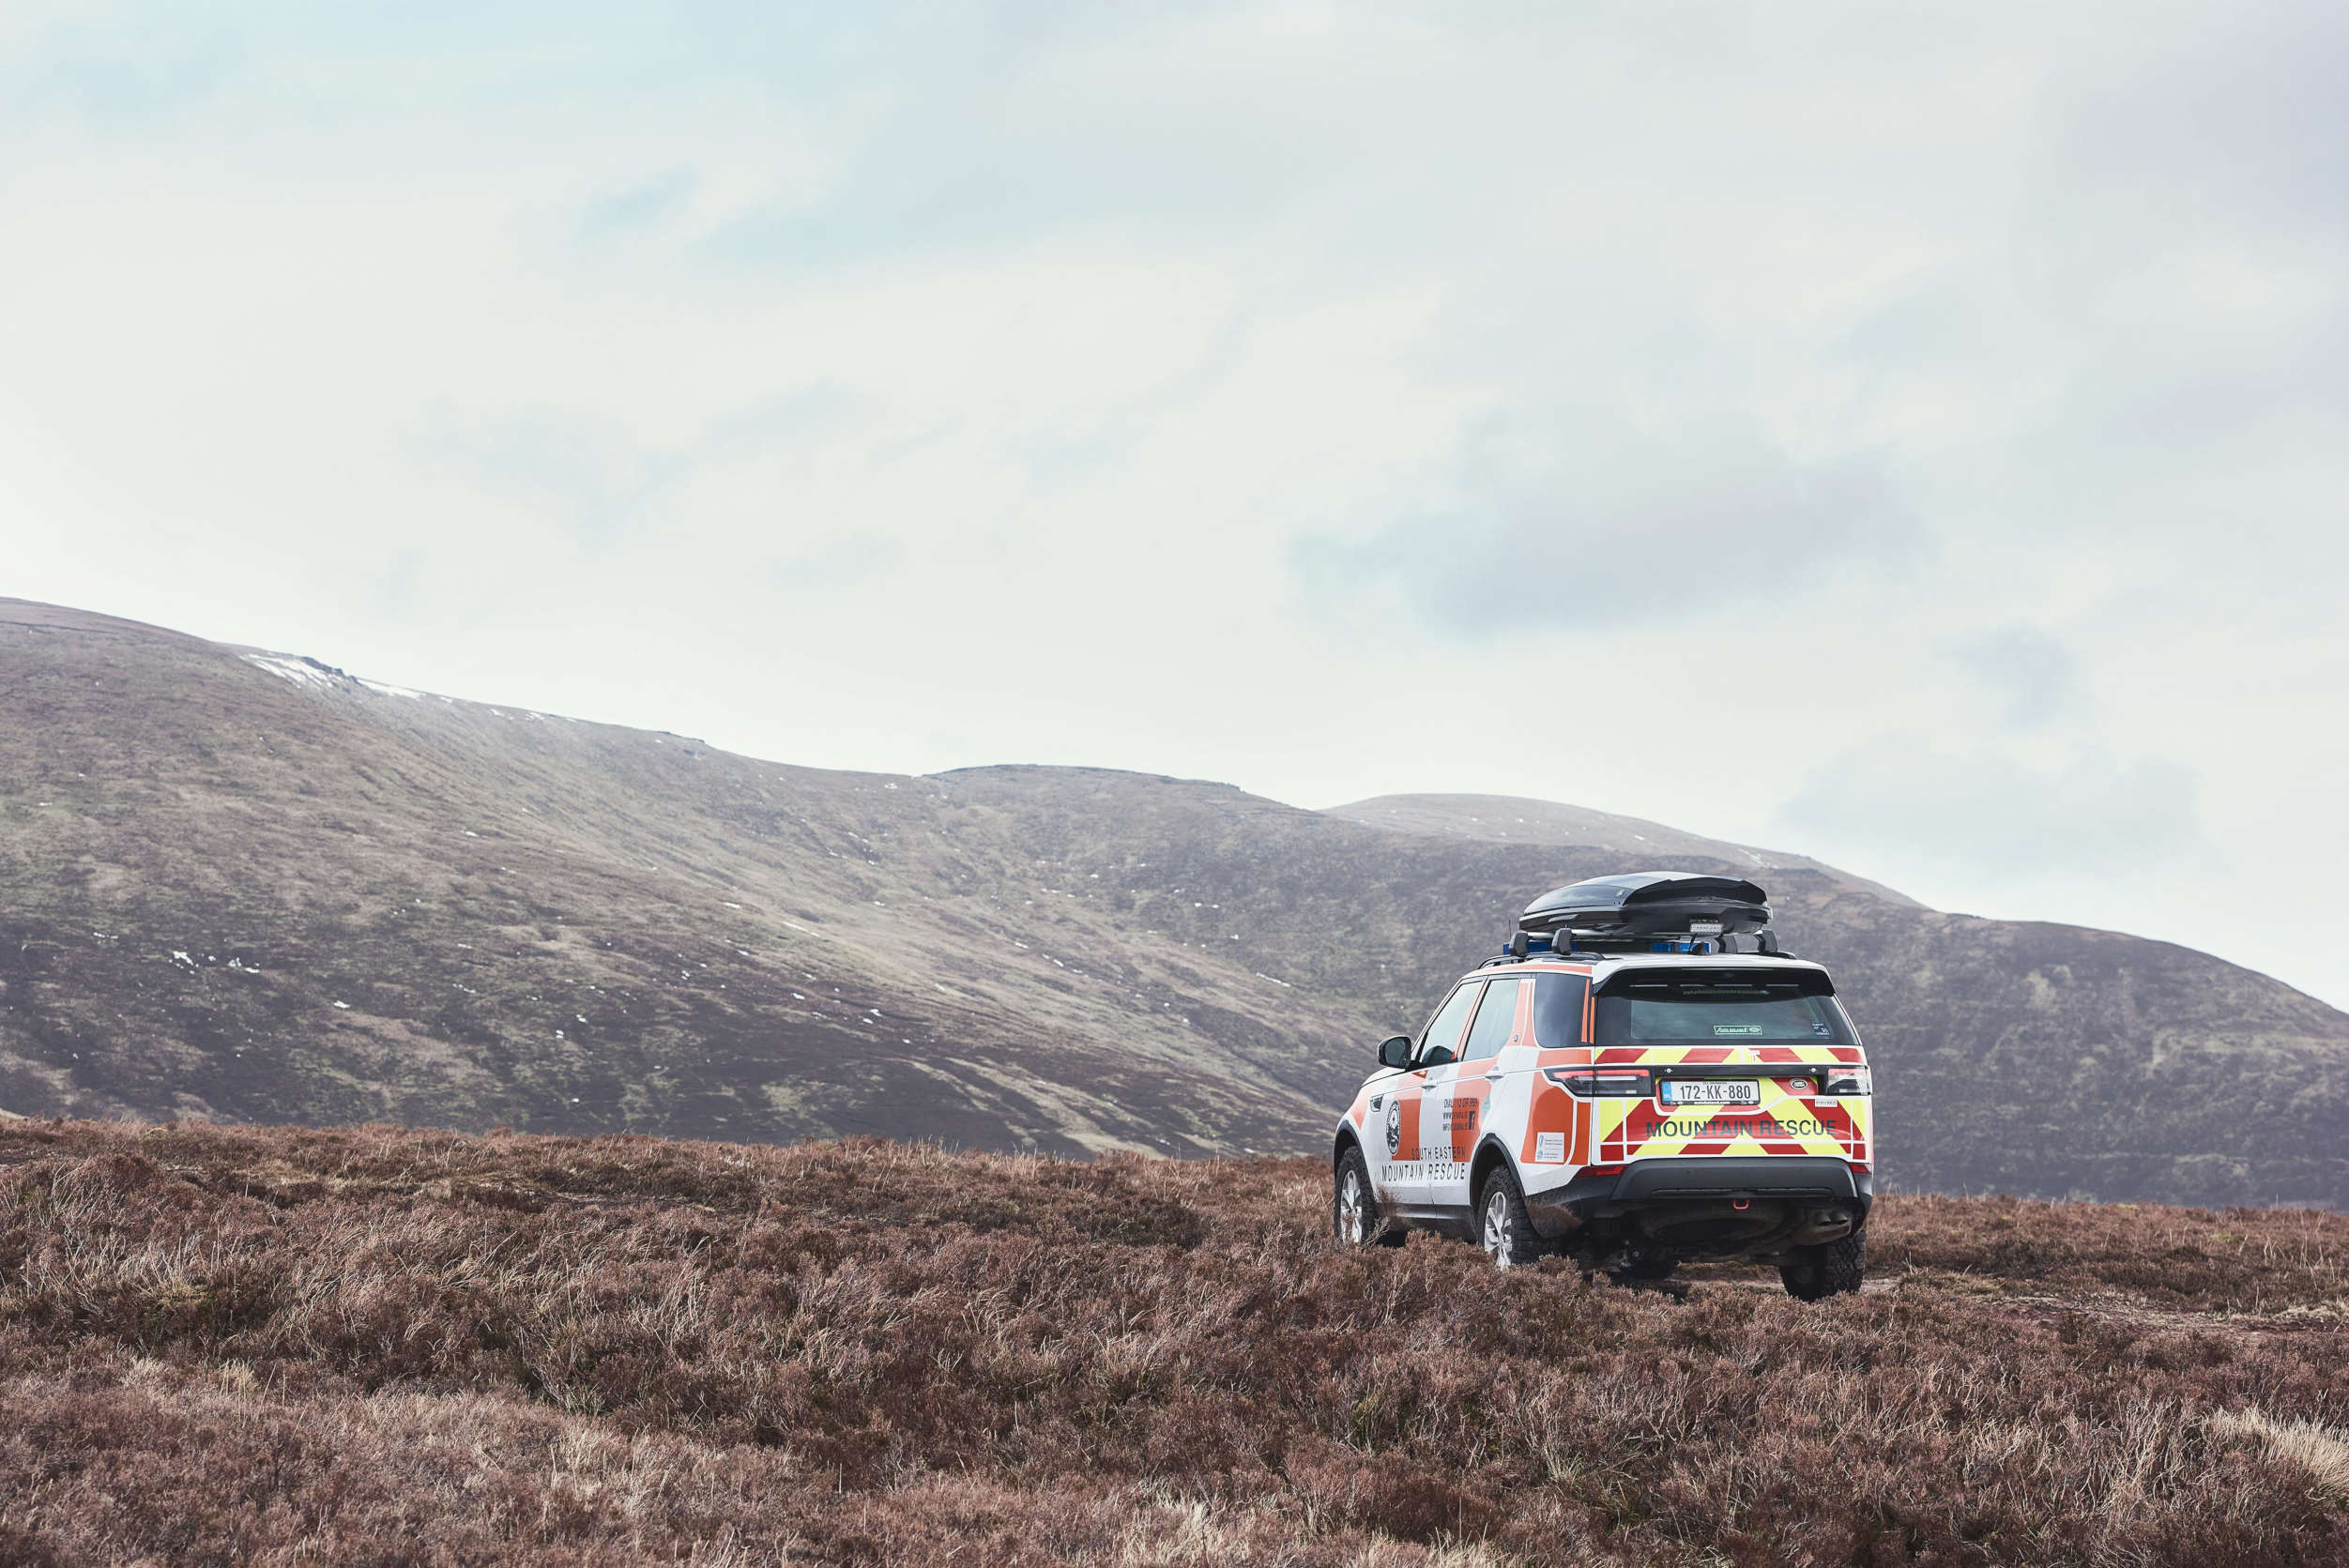 Diseñado para servir: Land Rover Discovery participa en un rescate histórico tras la reapertura de las montañas